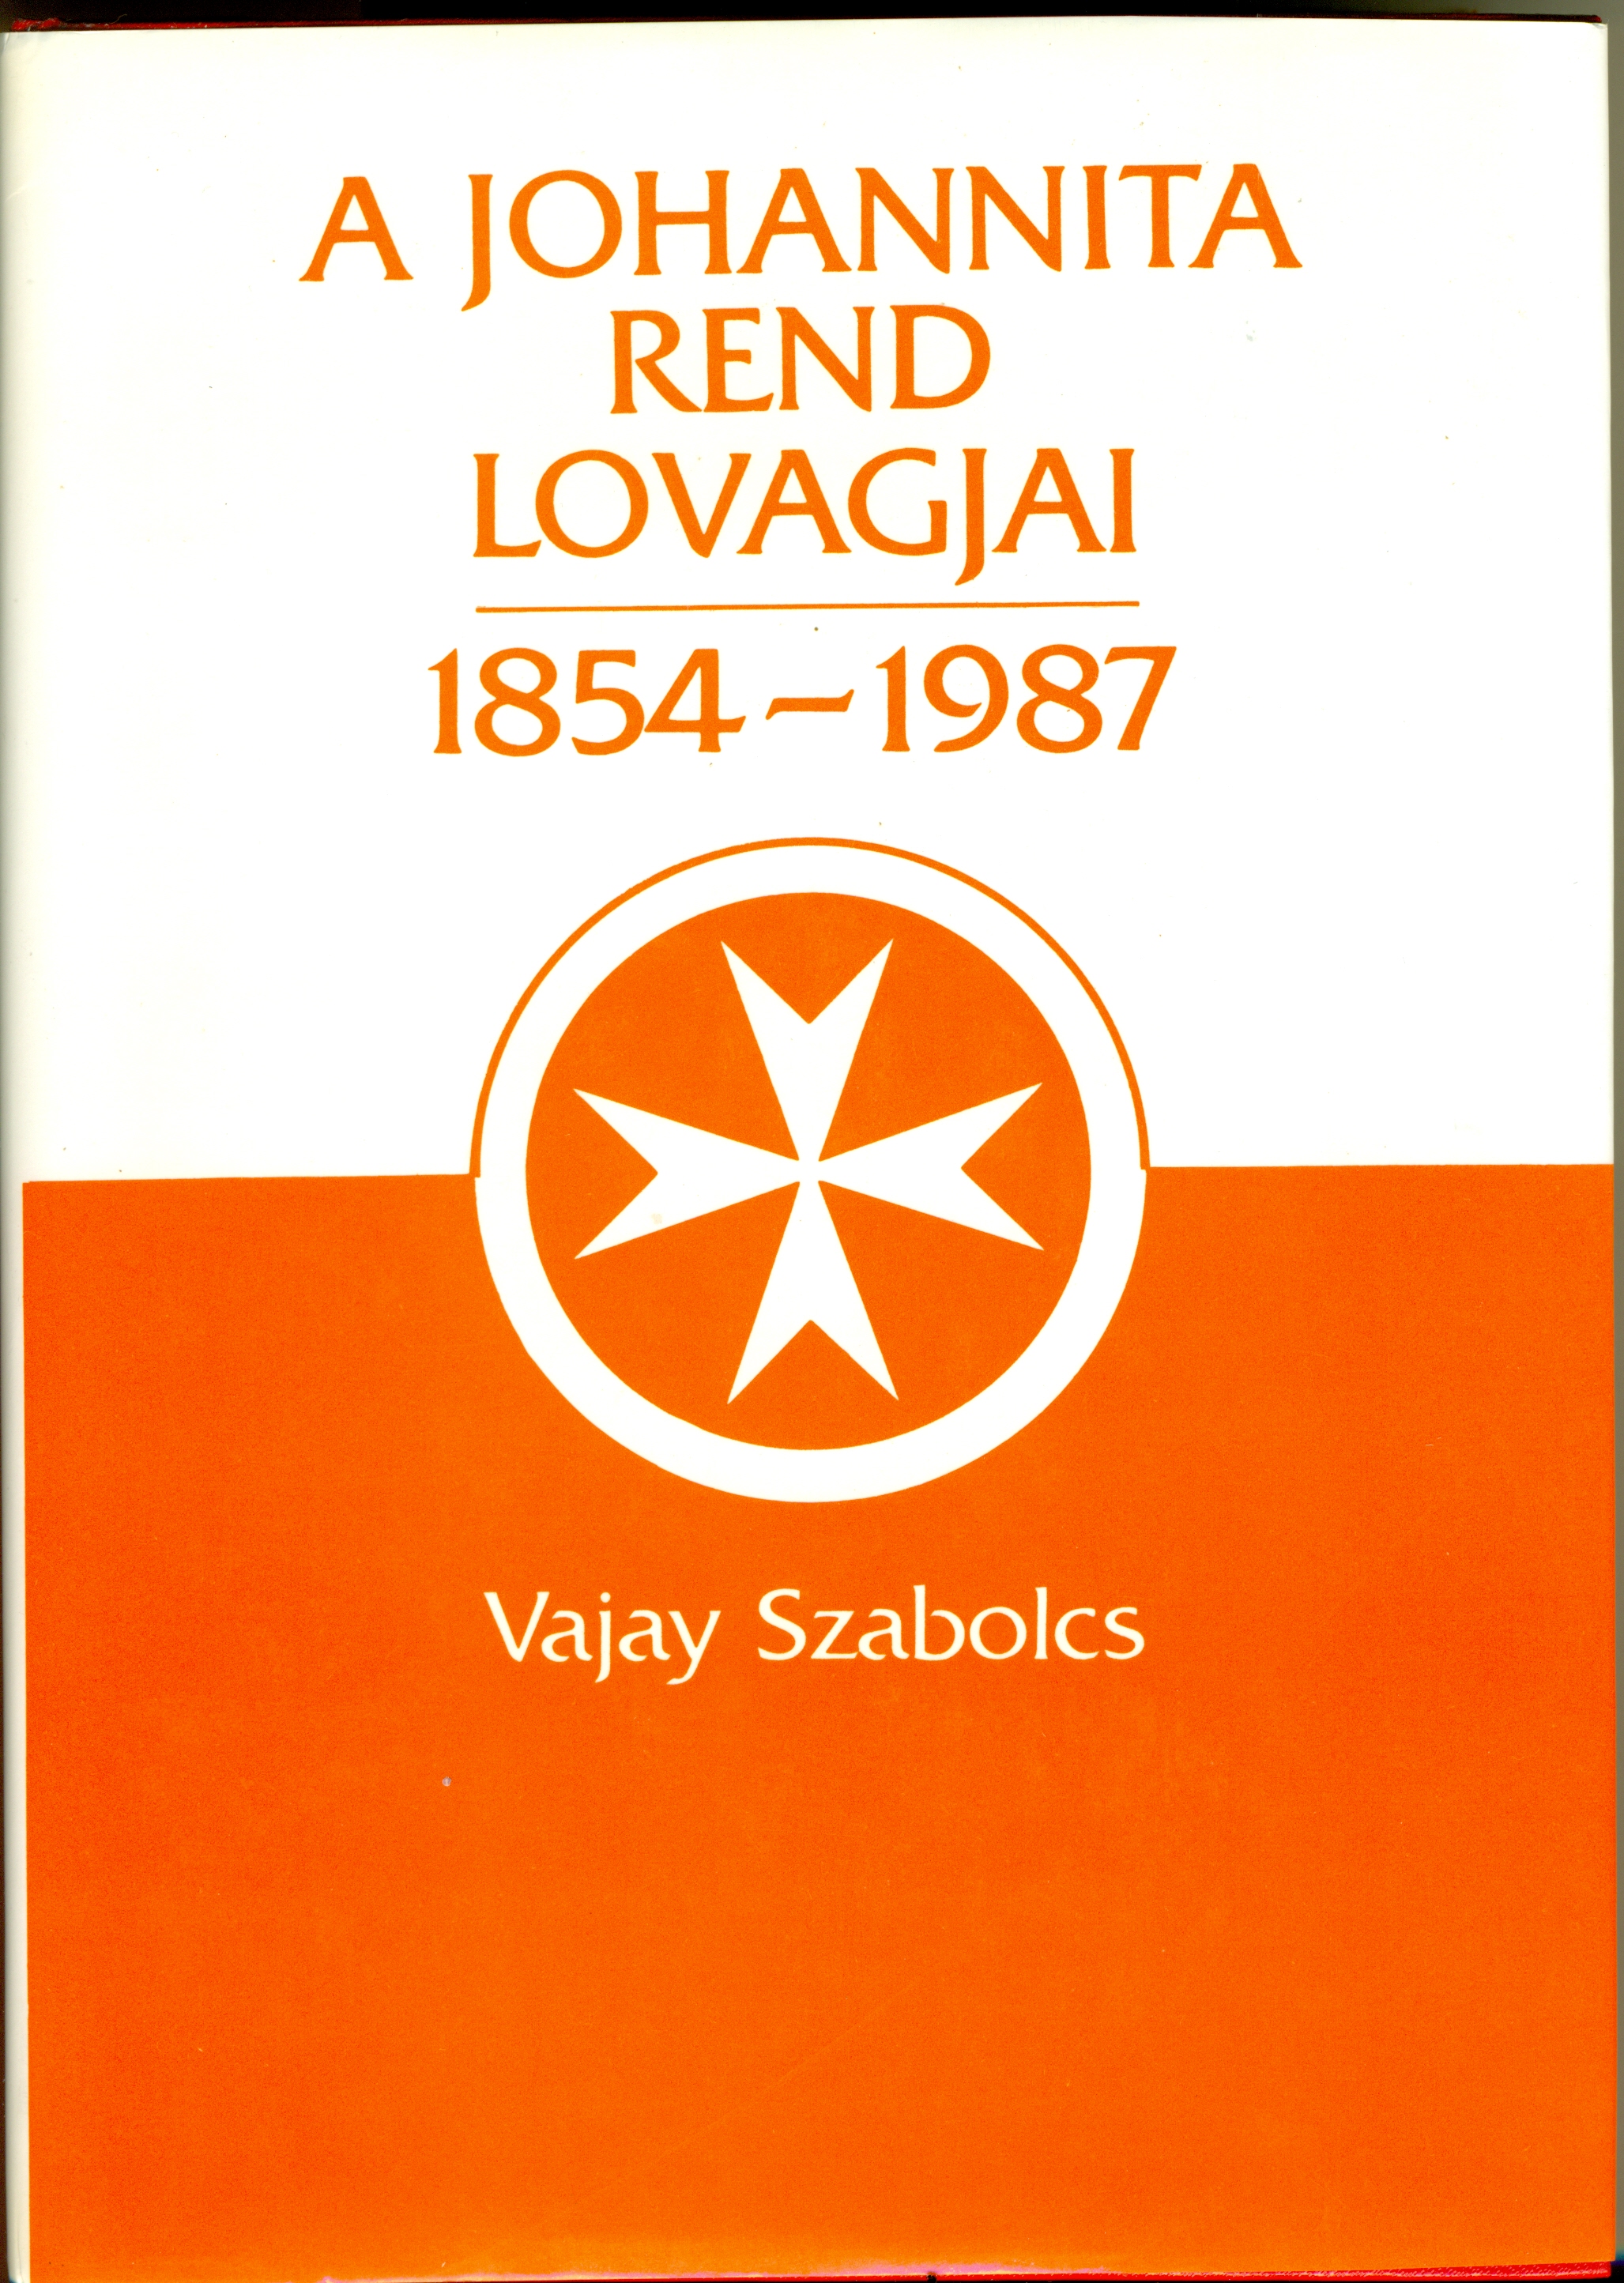 Vajay Szabolcs 'A Johannita Rend lovagjai, 1854-1987' című művének borítója.